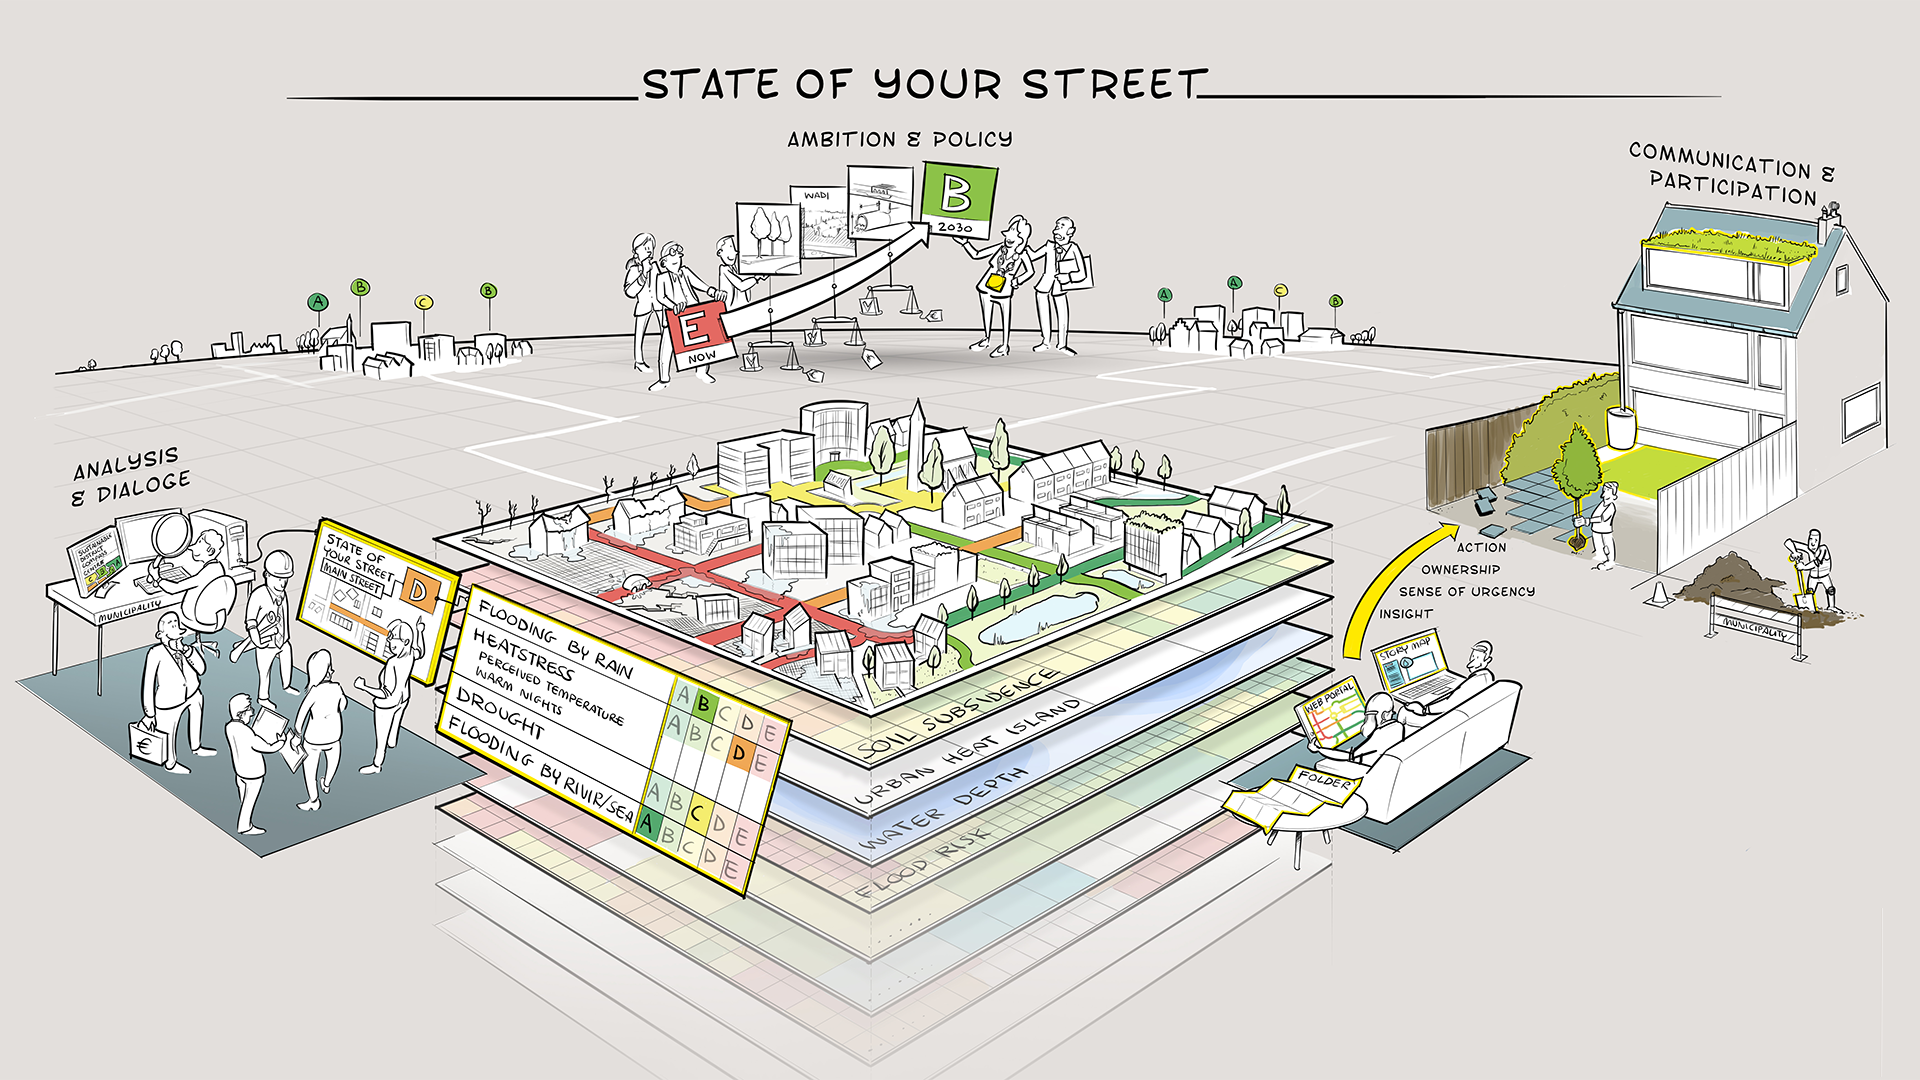 State of your Street on Swecon kehittämä menetelmä ja digitaalinen työkalu, joka mittaa ilmastonmuutoksen vaikutuksia tietyn luokittelujärjestelmän avulla ja tarjoaa näin välitöntä tietoa kaupunkilaisille ja päättäjille alueen tilasta.